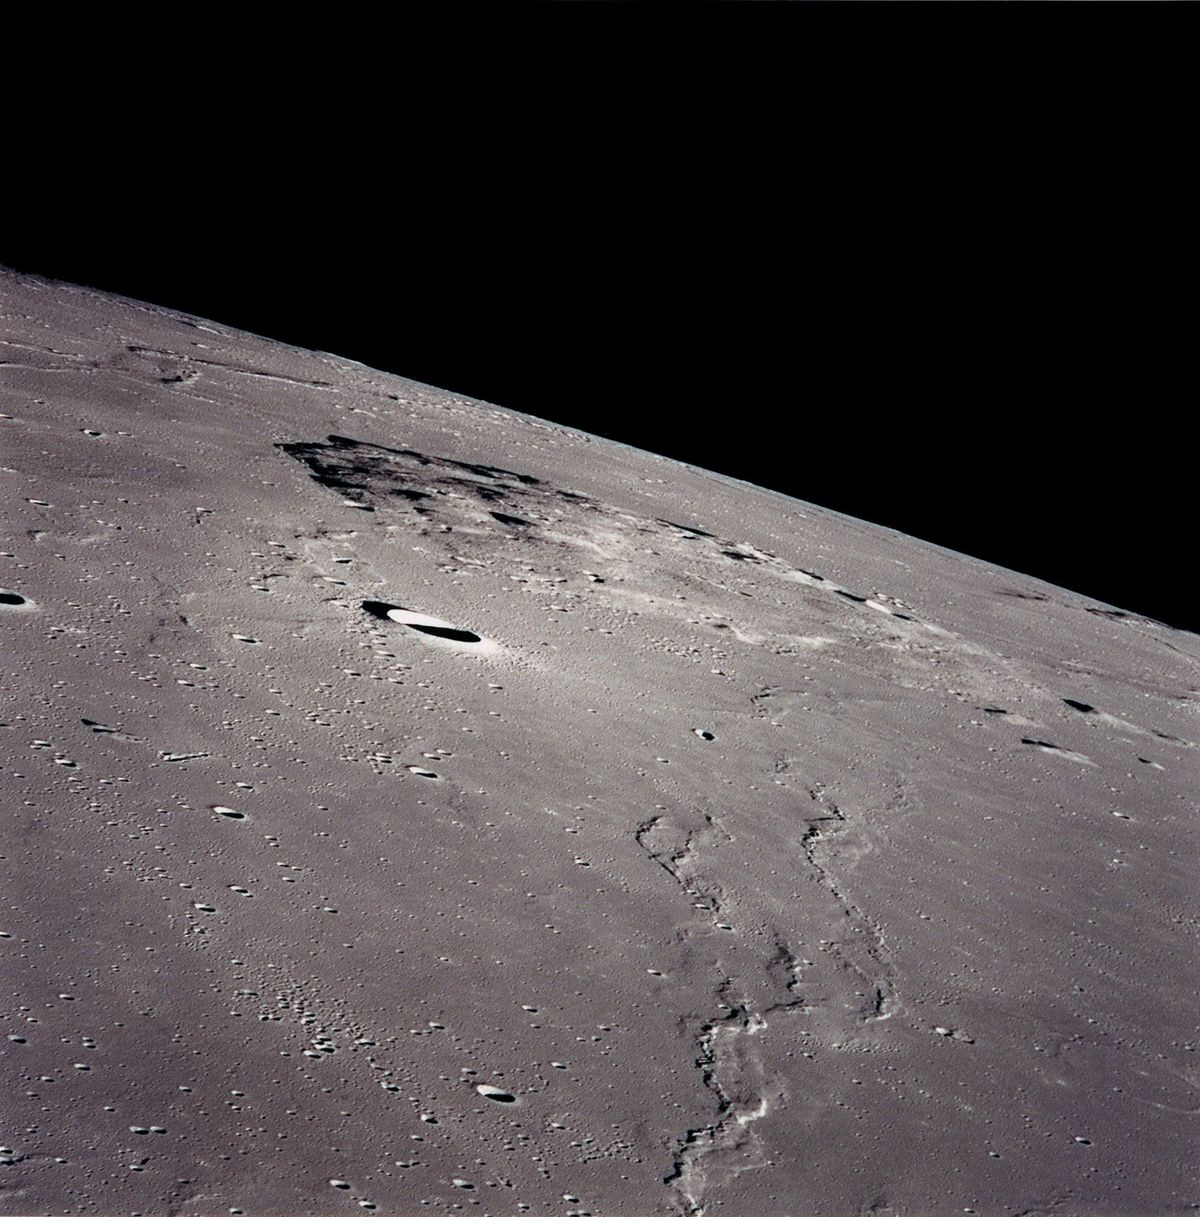 Het Chinese ruimtevaartuig Change5 zal in de buurt van Mons Rmker landen een vulkanische berg van zon 1100 meter hoogte in de noordwestelijke regio van de voorzijde van de maan Deze foto van Mons Rmker werd genomen door de bemanning van de Apollo 15 die op dat moment in een omloopbaan rond de maan vloog